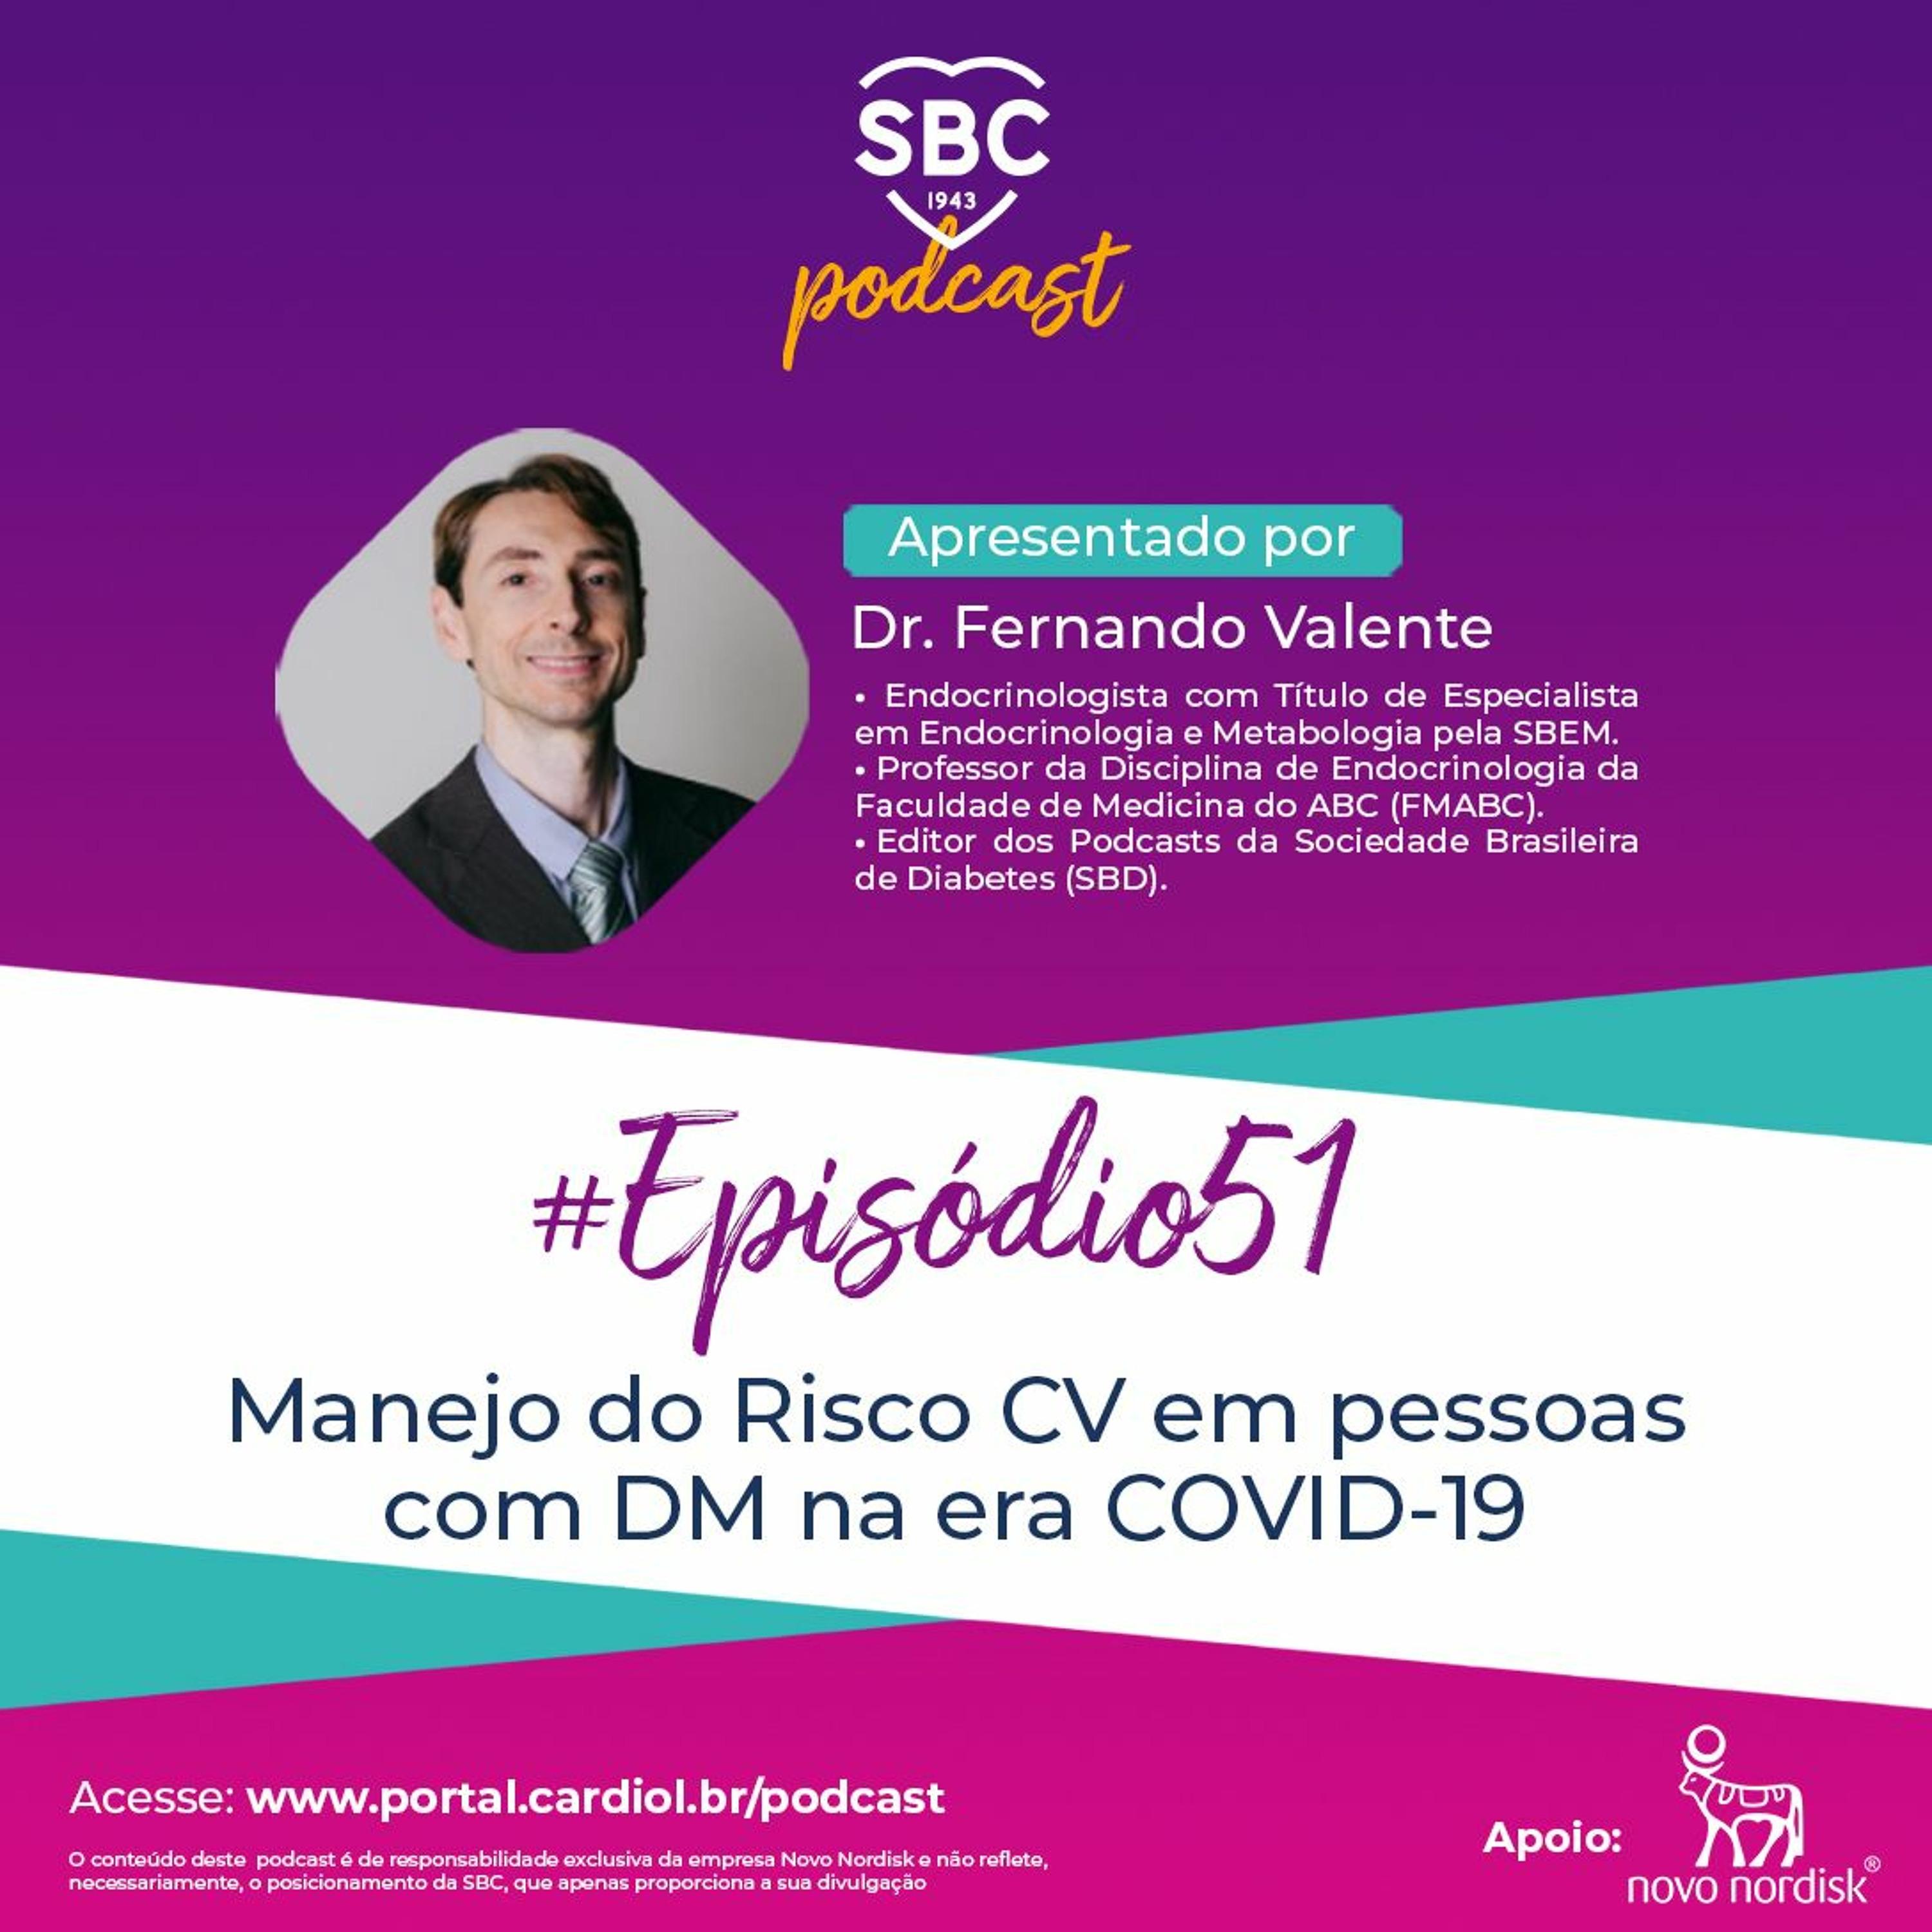 Neste episódio, o Dr. Fernando Valente abordará o manejo do Risco CV em pessoas com DM na era COVID-19.